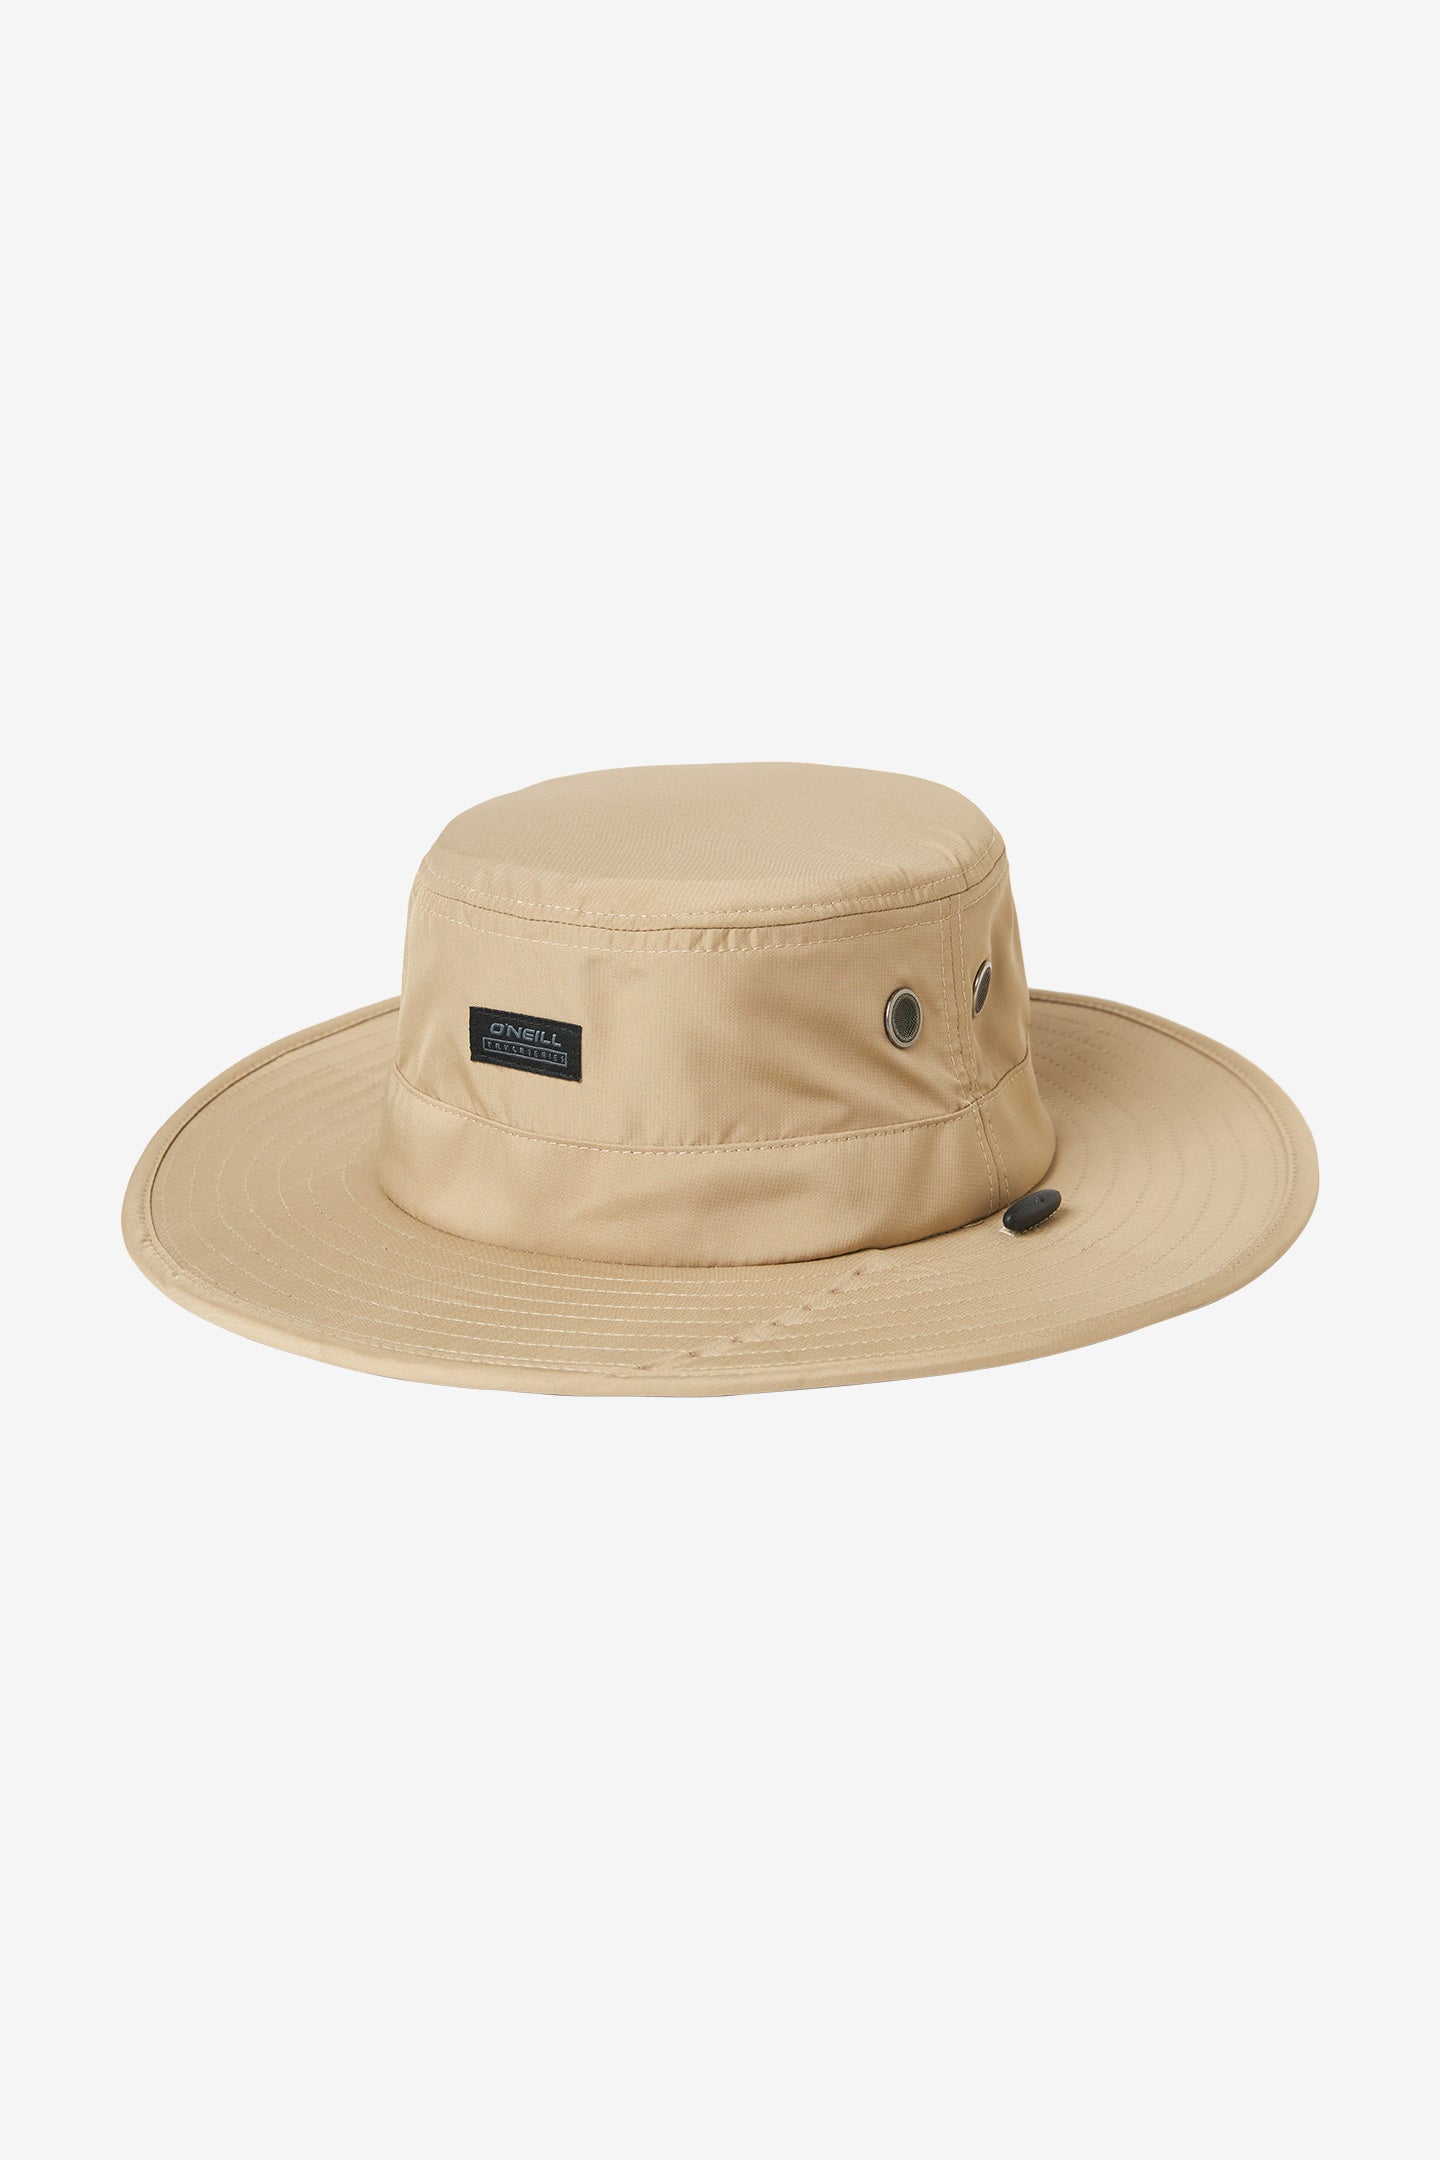 O'Neill Men's Lancaster Full Brim Hat at